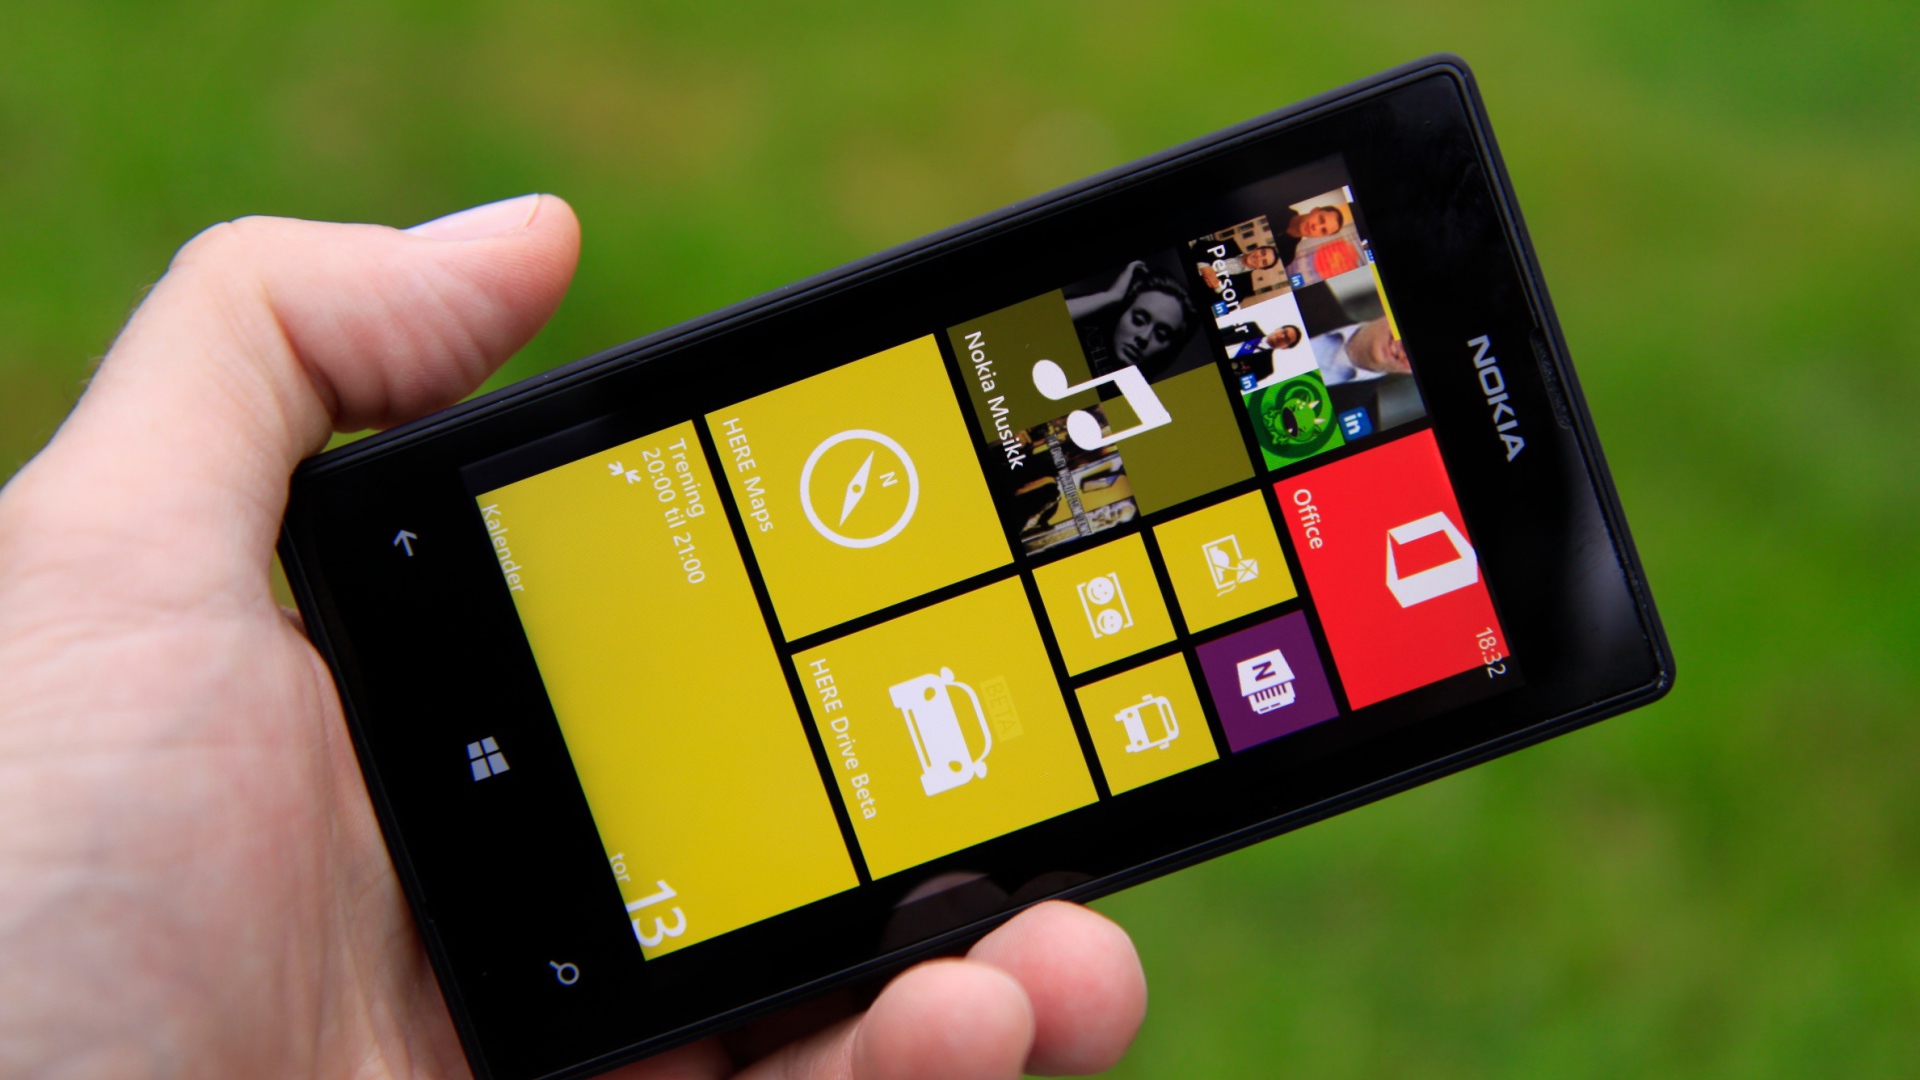 Чёрная Nokia Lumia 520 в руке